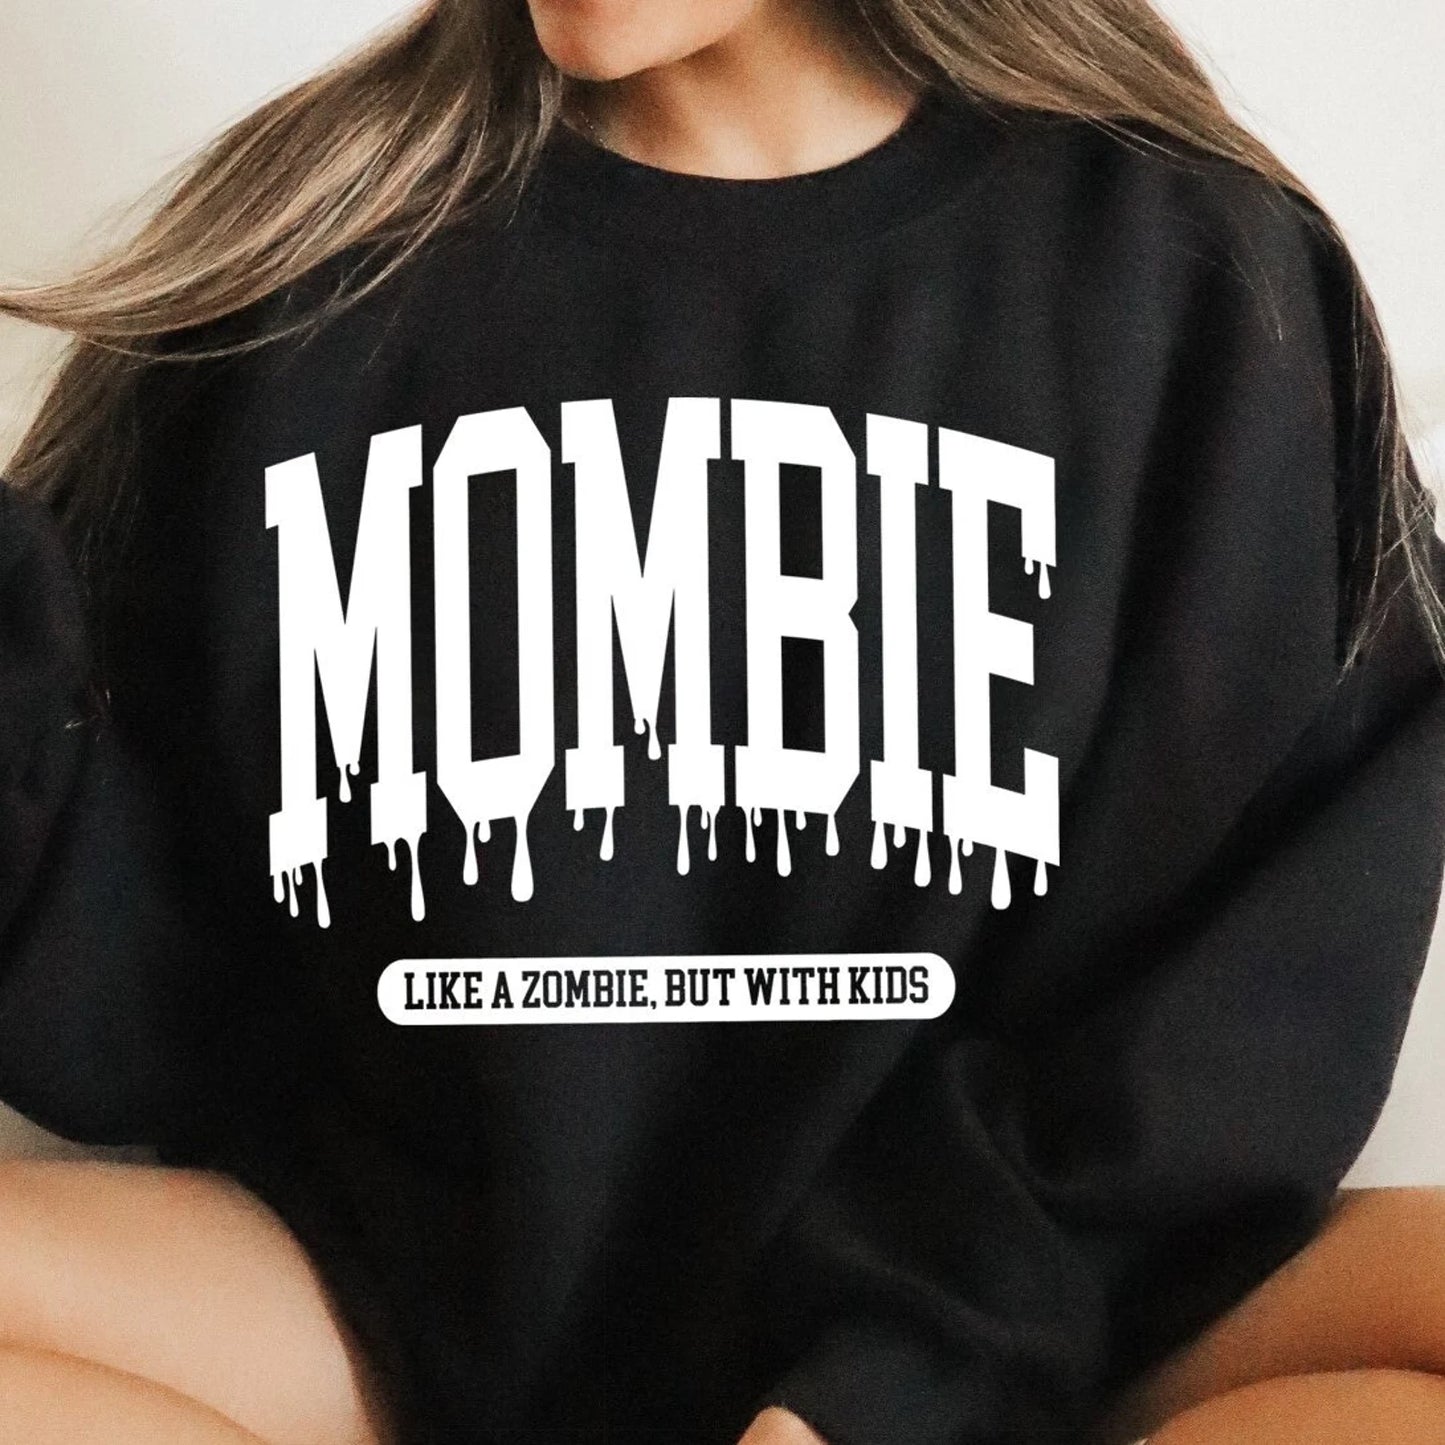 Mombie